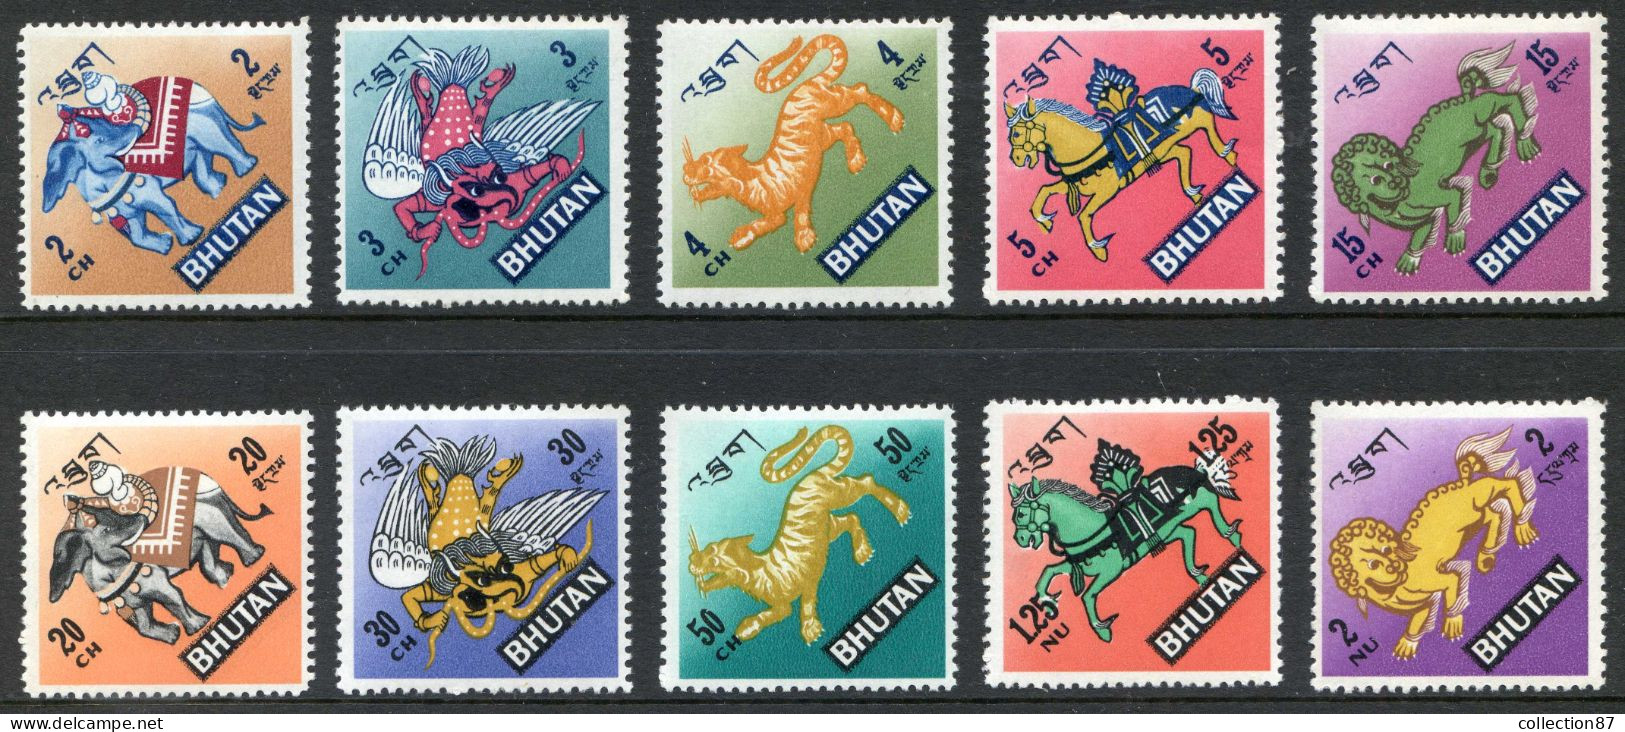 REF 002 > BHOUTAN < Yvert  N° 160 à 169 * * Neuf Luxe MNH * * > ELEPHANT - LION - TIGRE - CHEVAL - Bhoutan